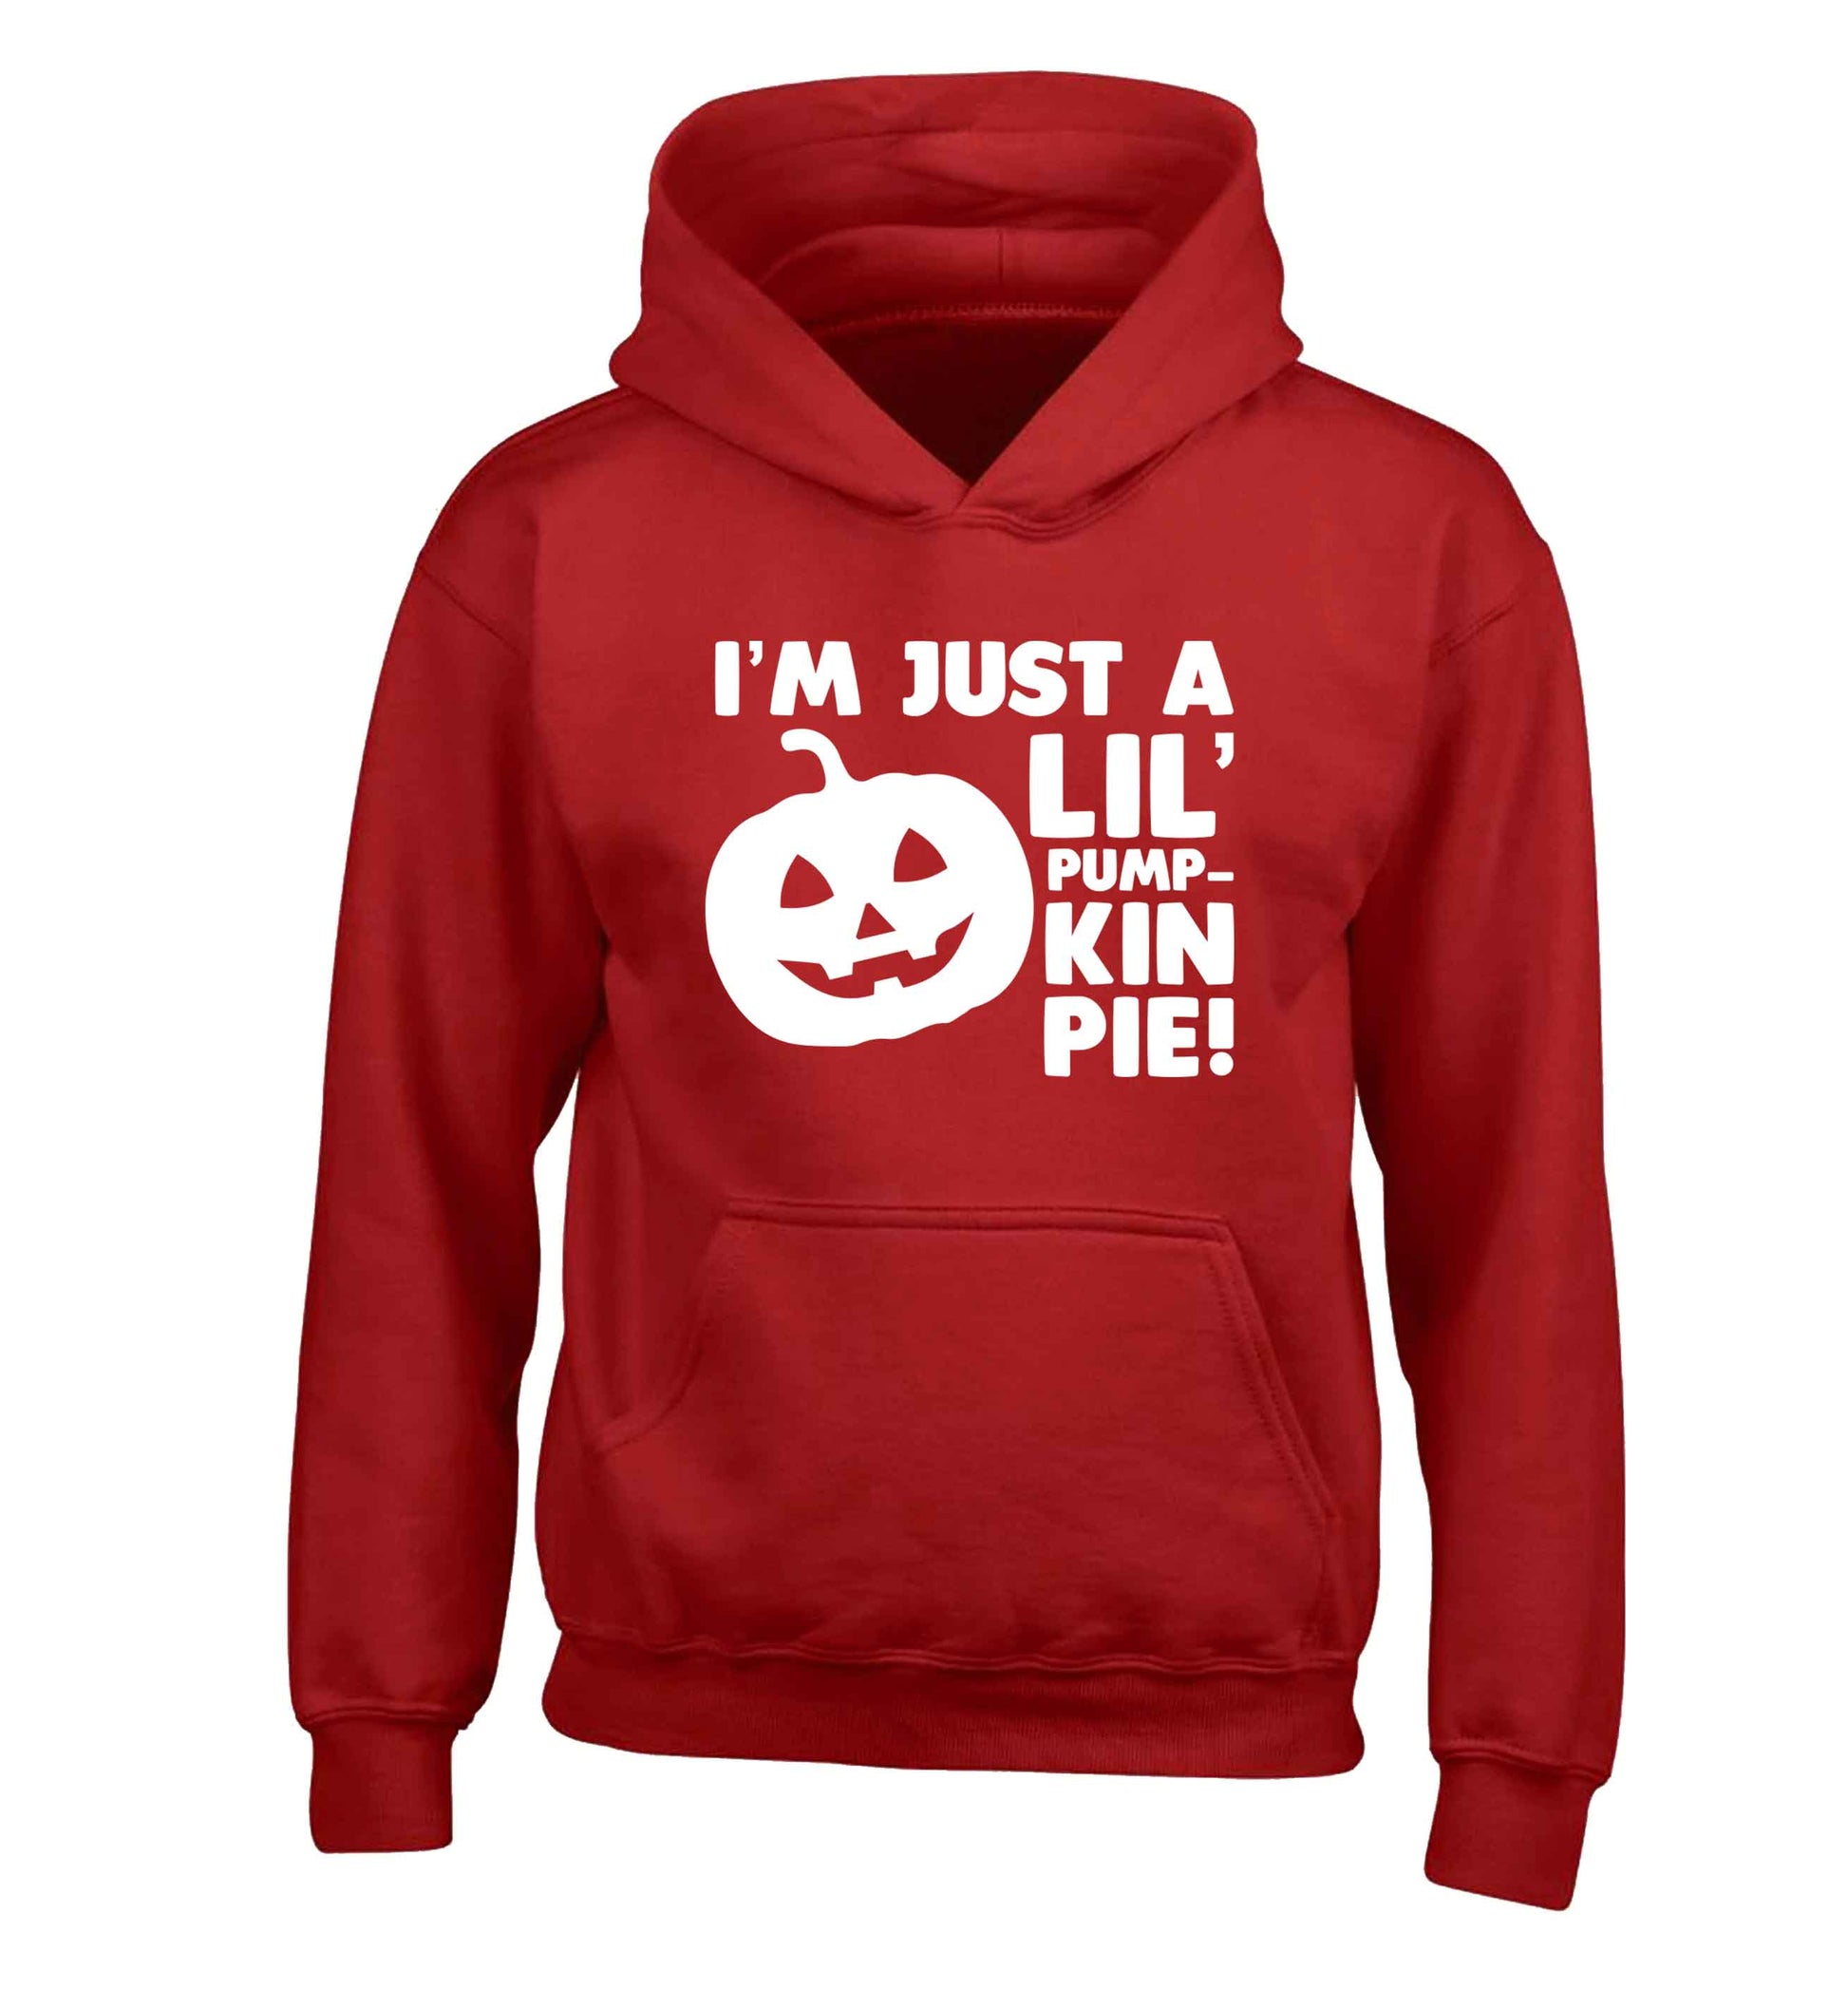 I'm just a lil' pumpkin pie children's red hoodie 12-13 Years